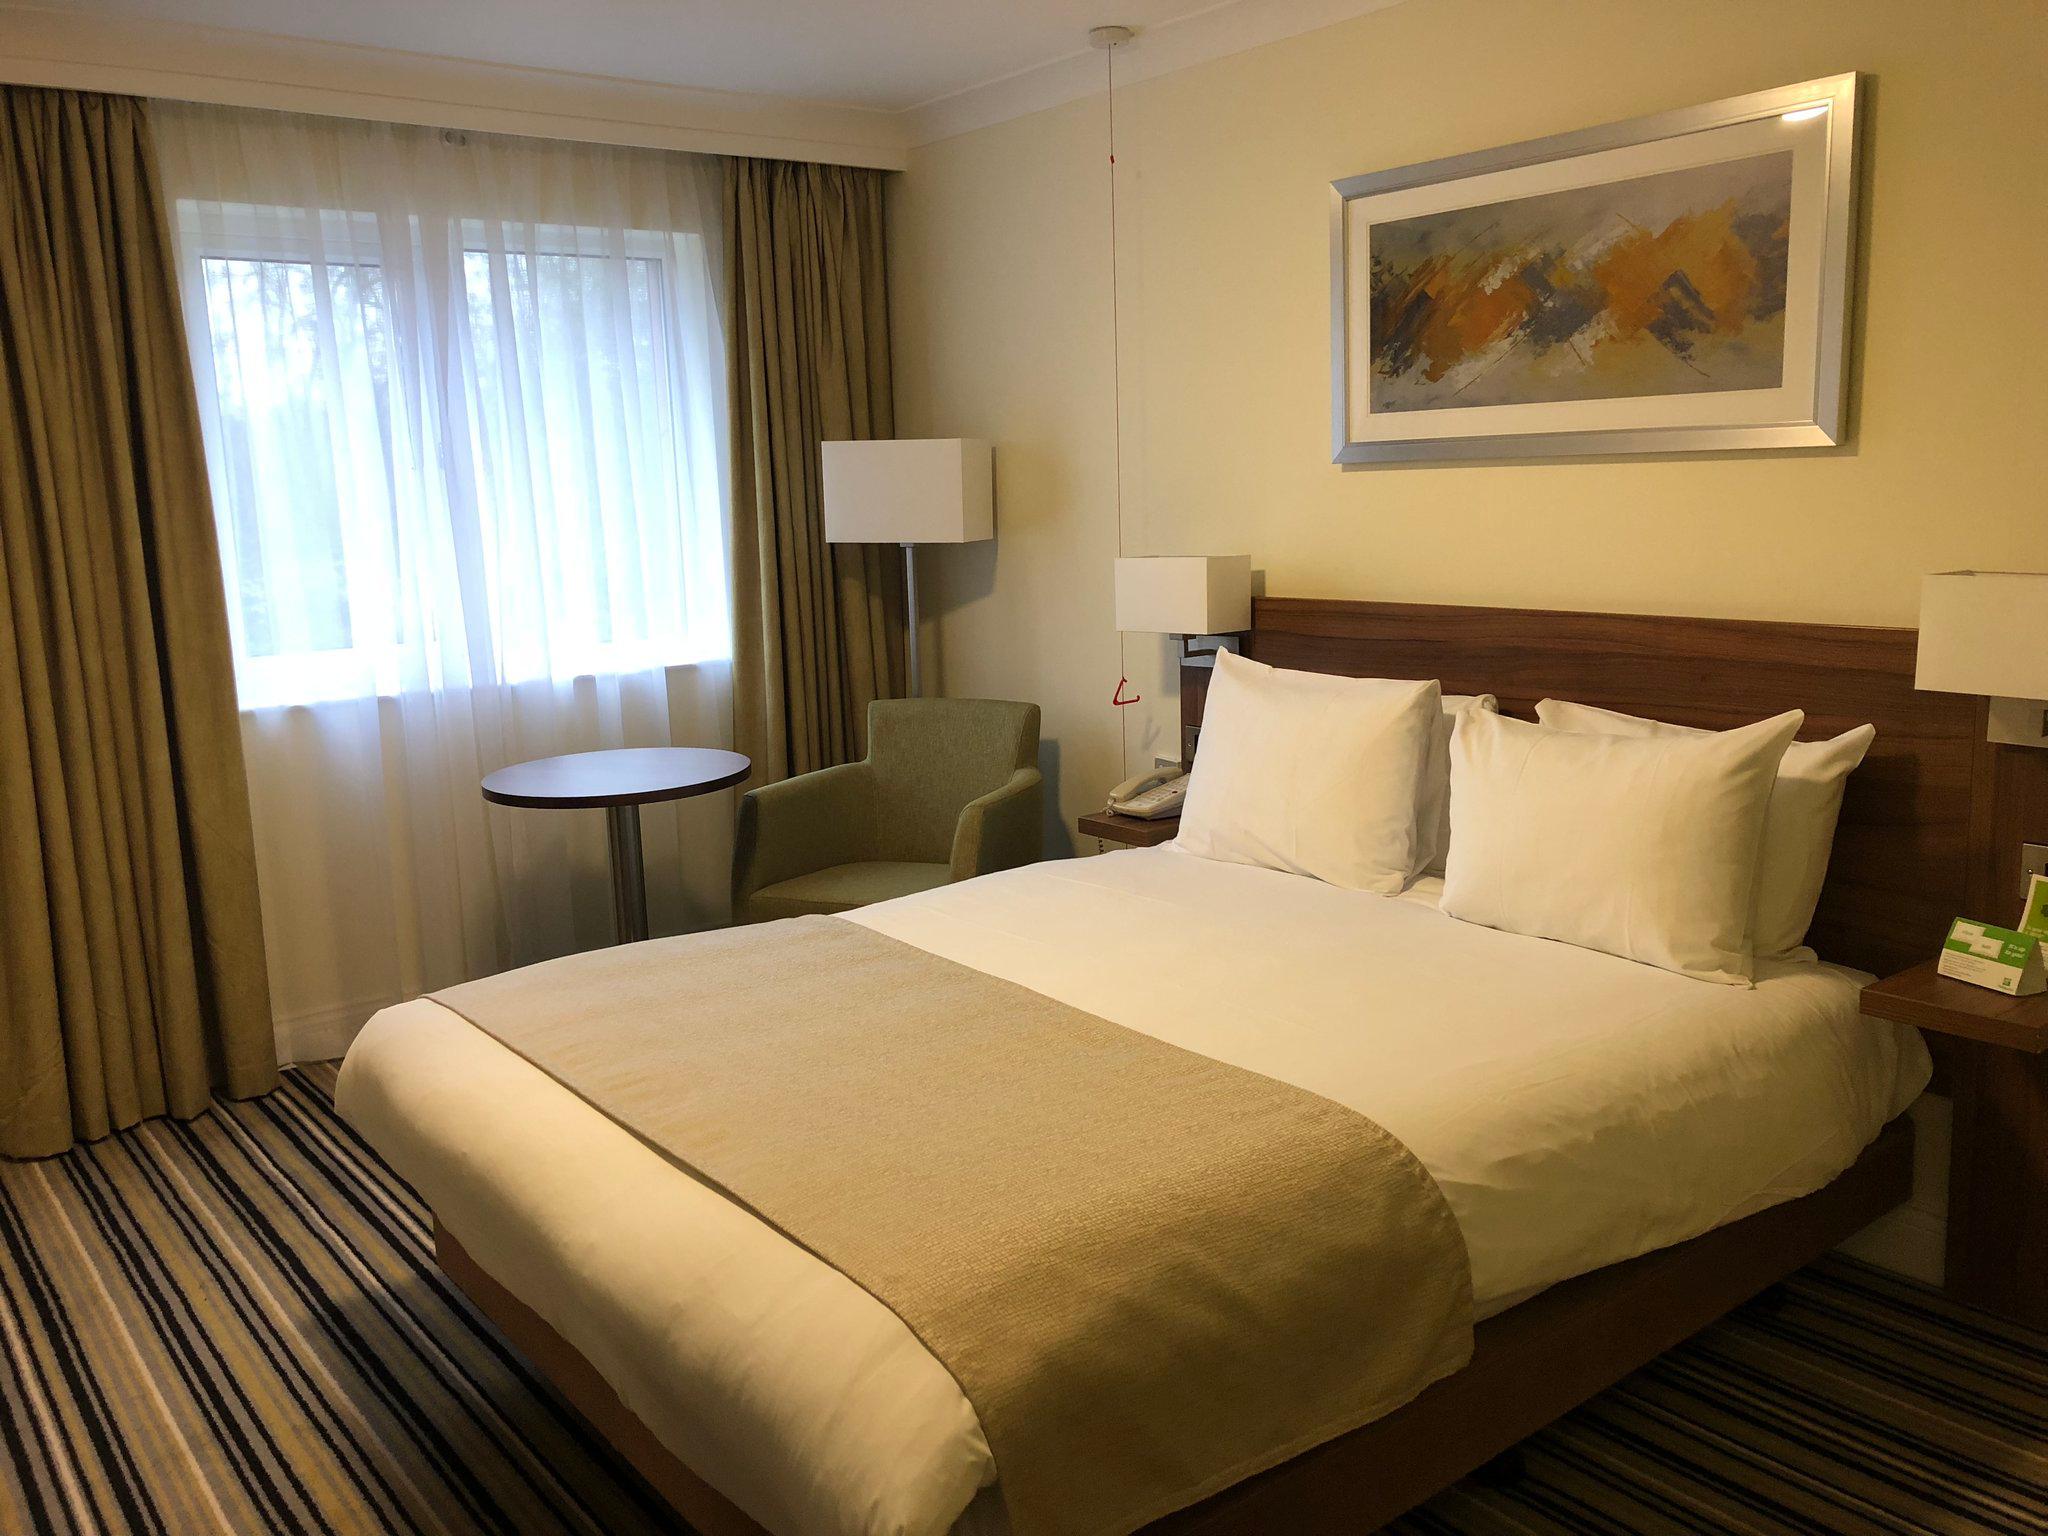 Holiday Inn Ashford - Central, an IHG Hotel Ashford 01233 619600